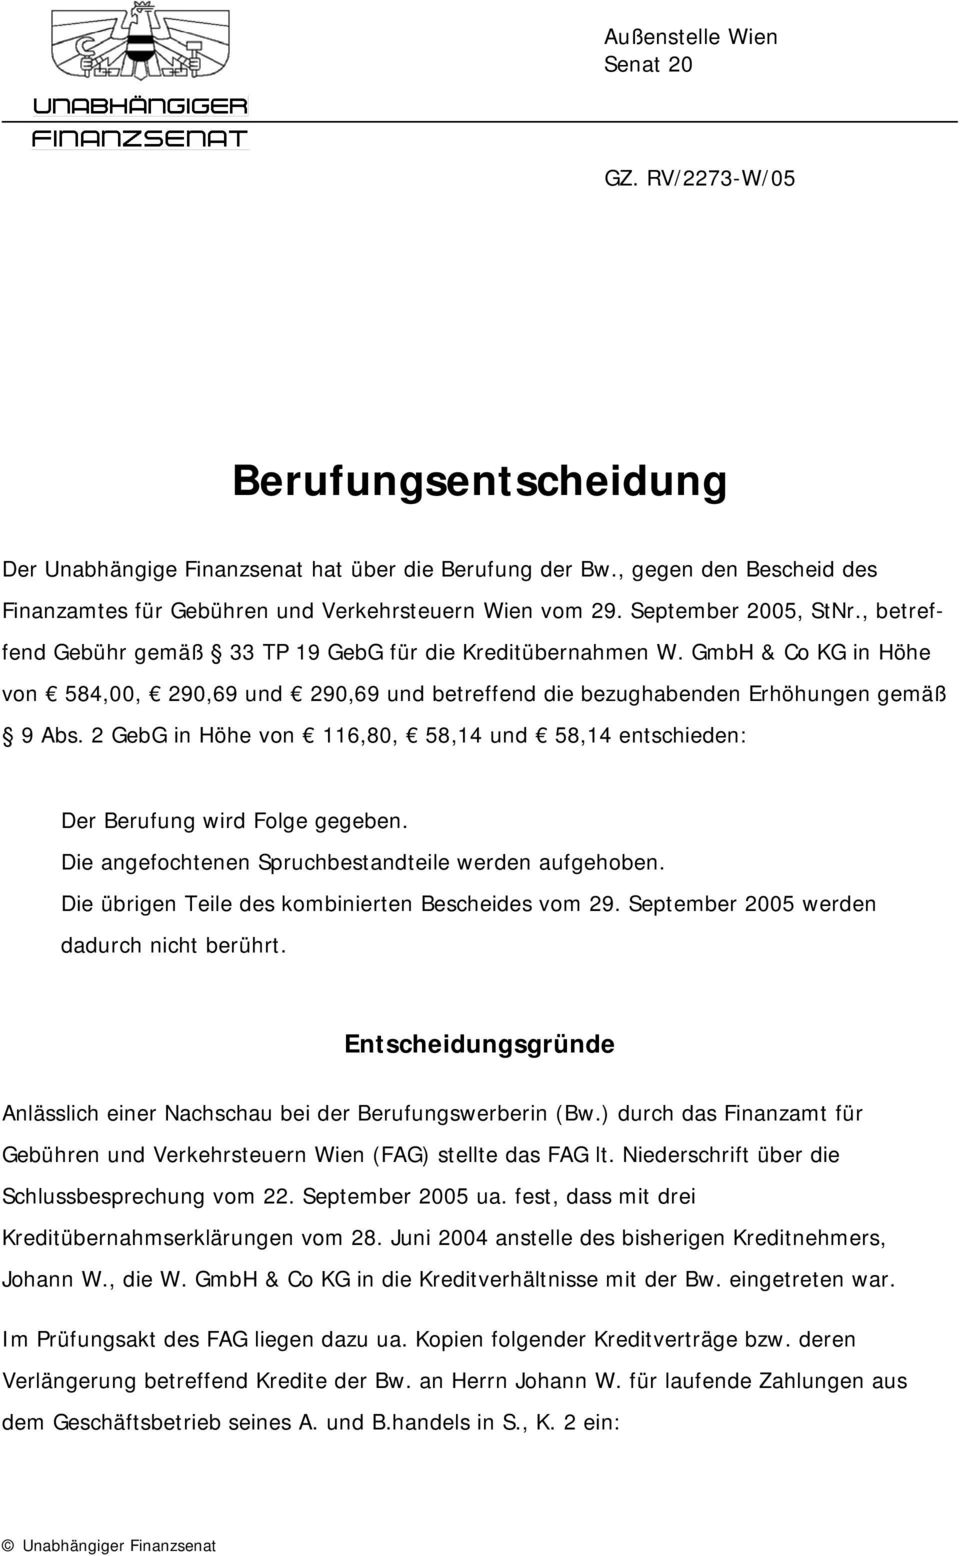 GmbH & Co KG in Höhe von 584,00, 290,69 und 290,69 und betreffend die bezughabenden Erhöhungen gemäß 9 Abs. 2 GebG in Höhe von 116,80, 58,14 und 58,14 entschieden: Der Berufung wird Folge gegeben.